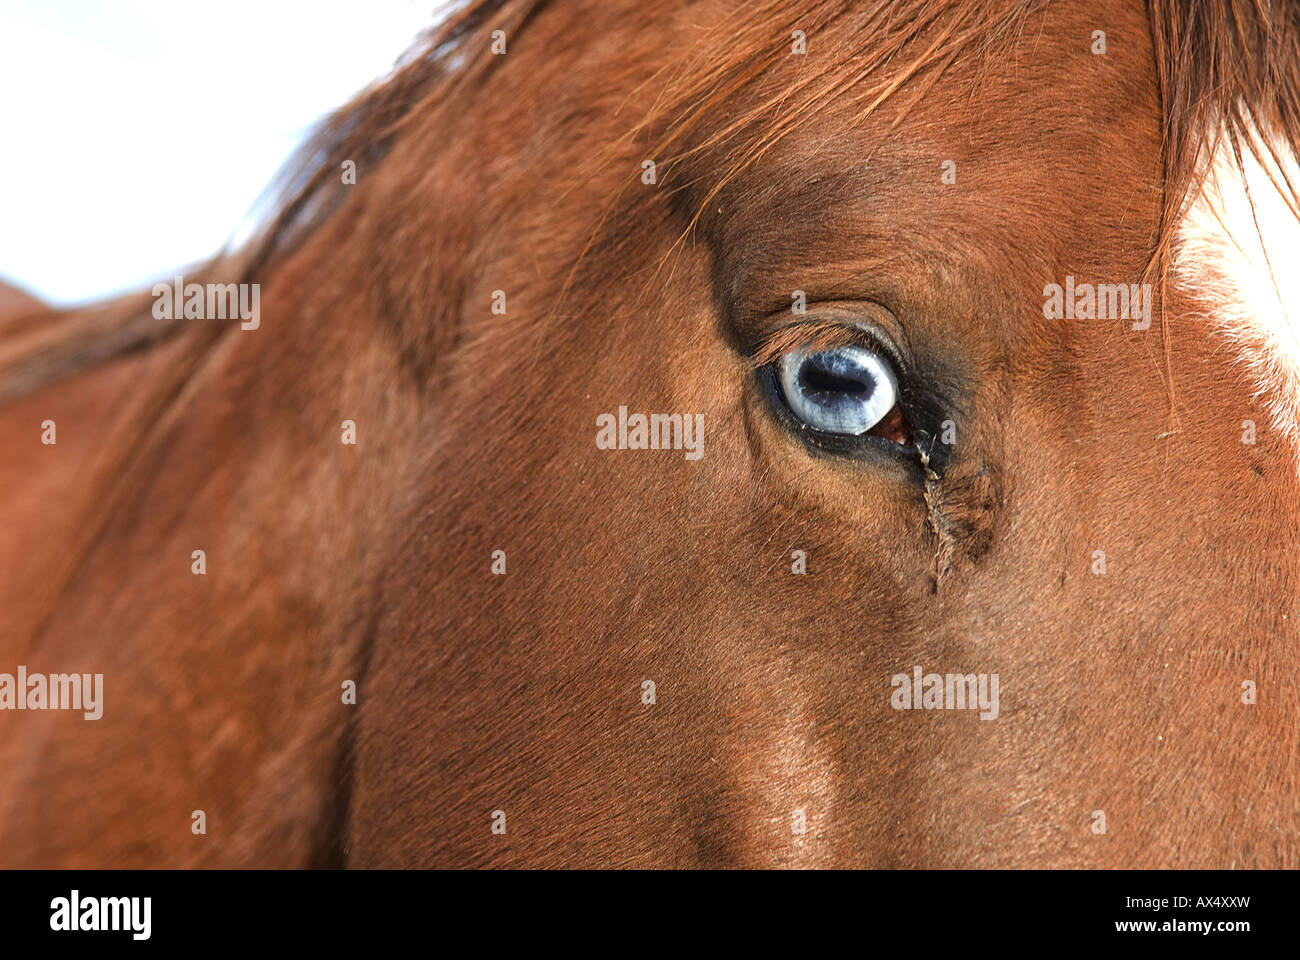 Chestnut testa di cavallo collo con parete blue eye e white blaze Foto Stock